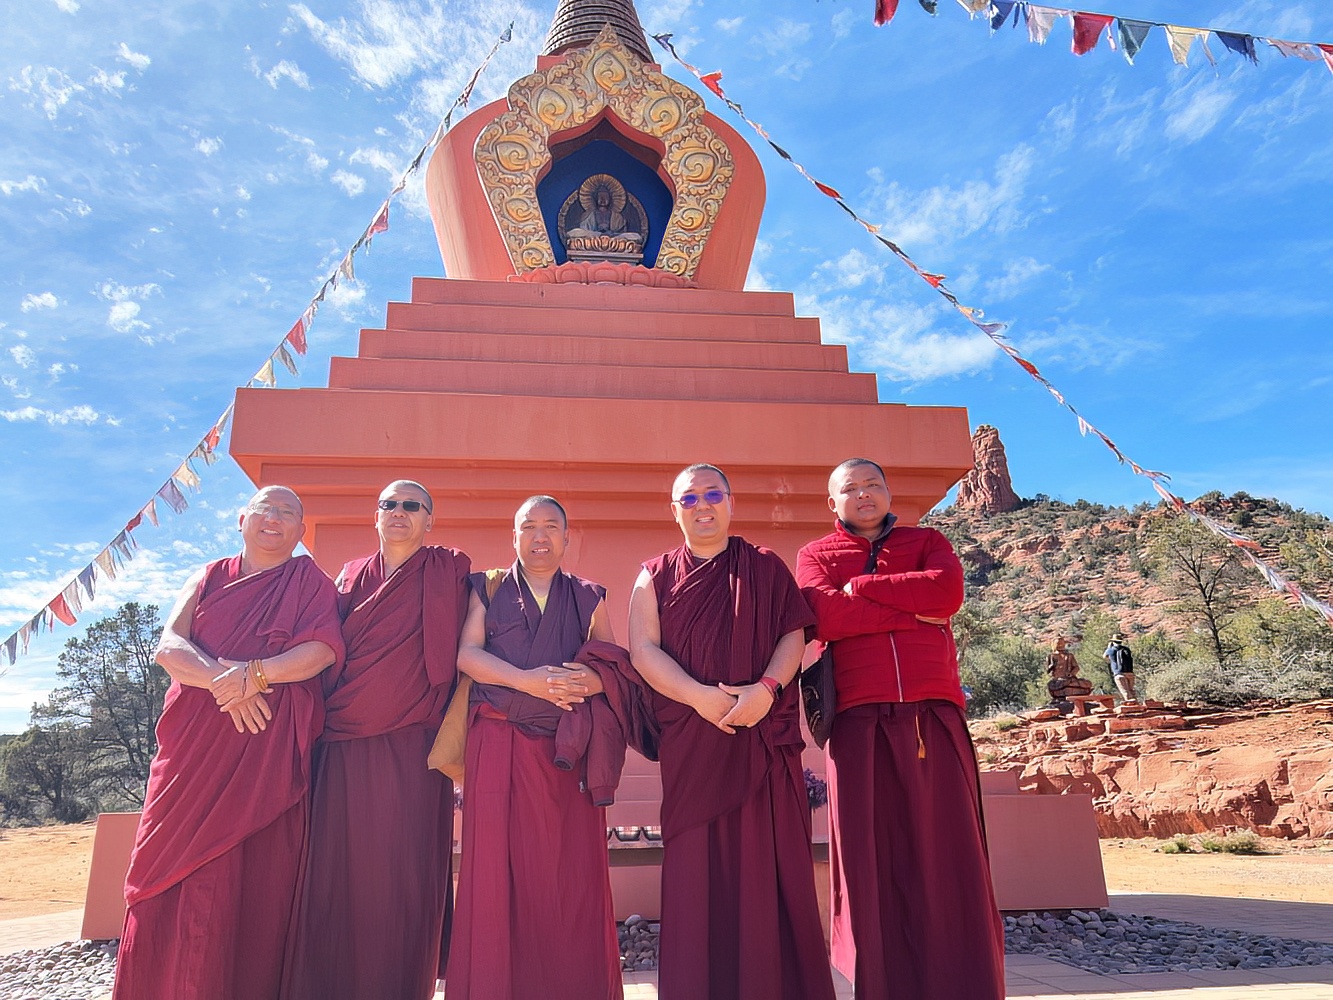 Gaden Shartse Monks at Stupa